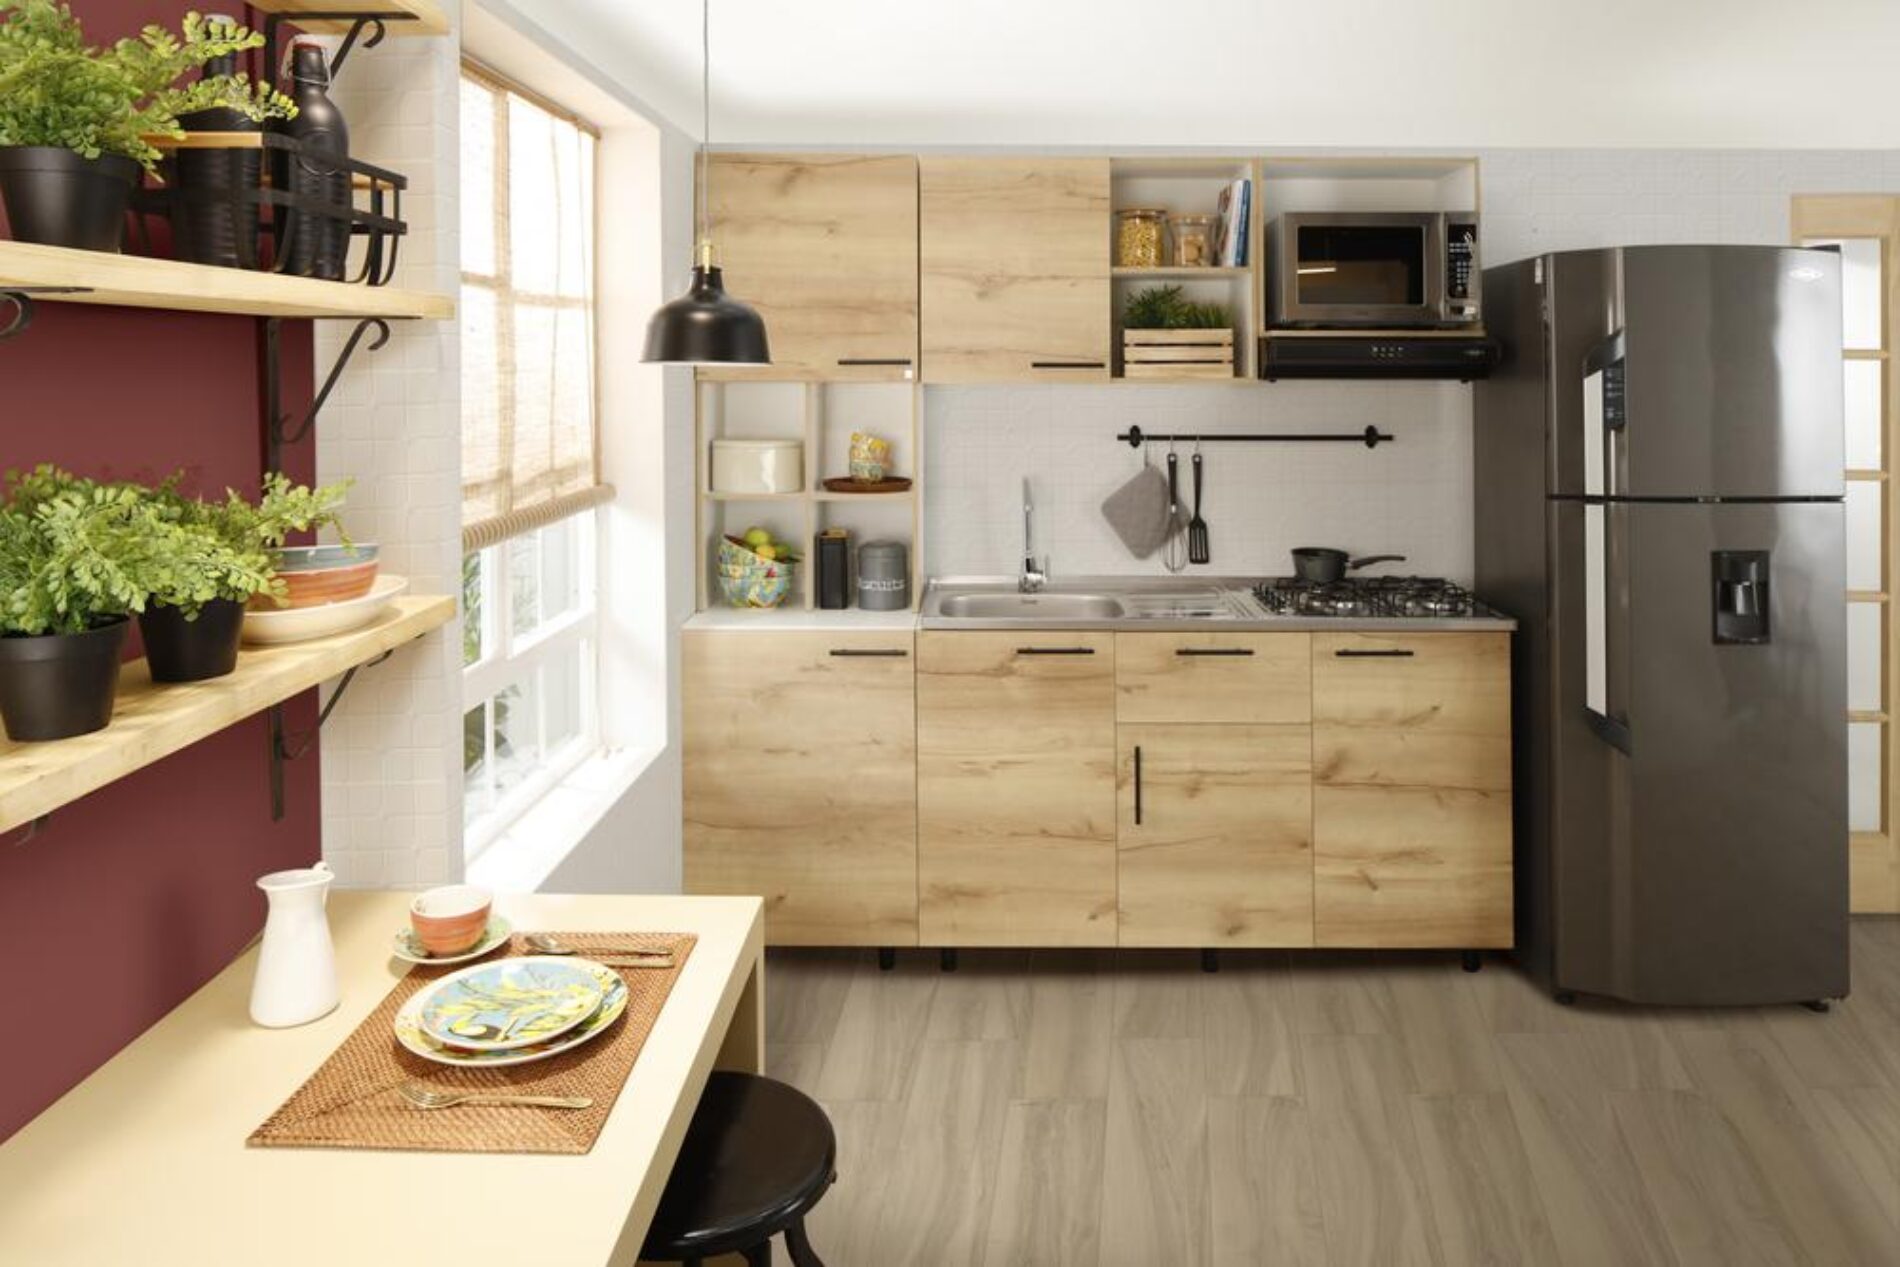 La cocina, un espacio que va más allá del diseño